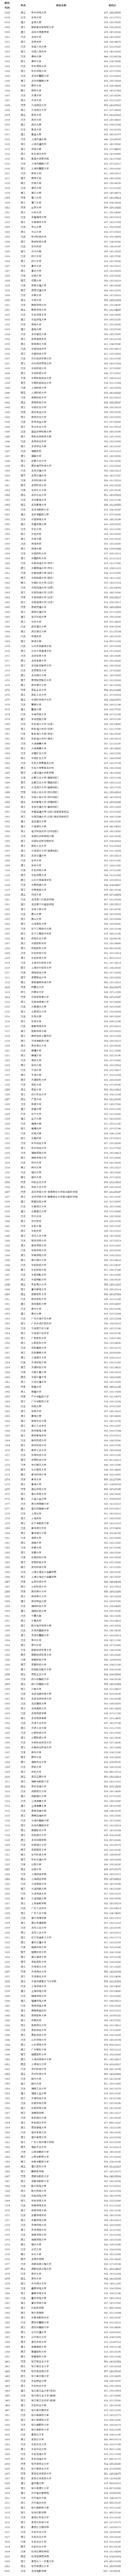 黑龙江省高考排名_2019黑龙江高考成绩一分段统计表,2020高考报志愿参考